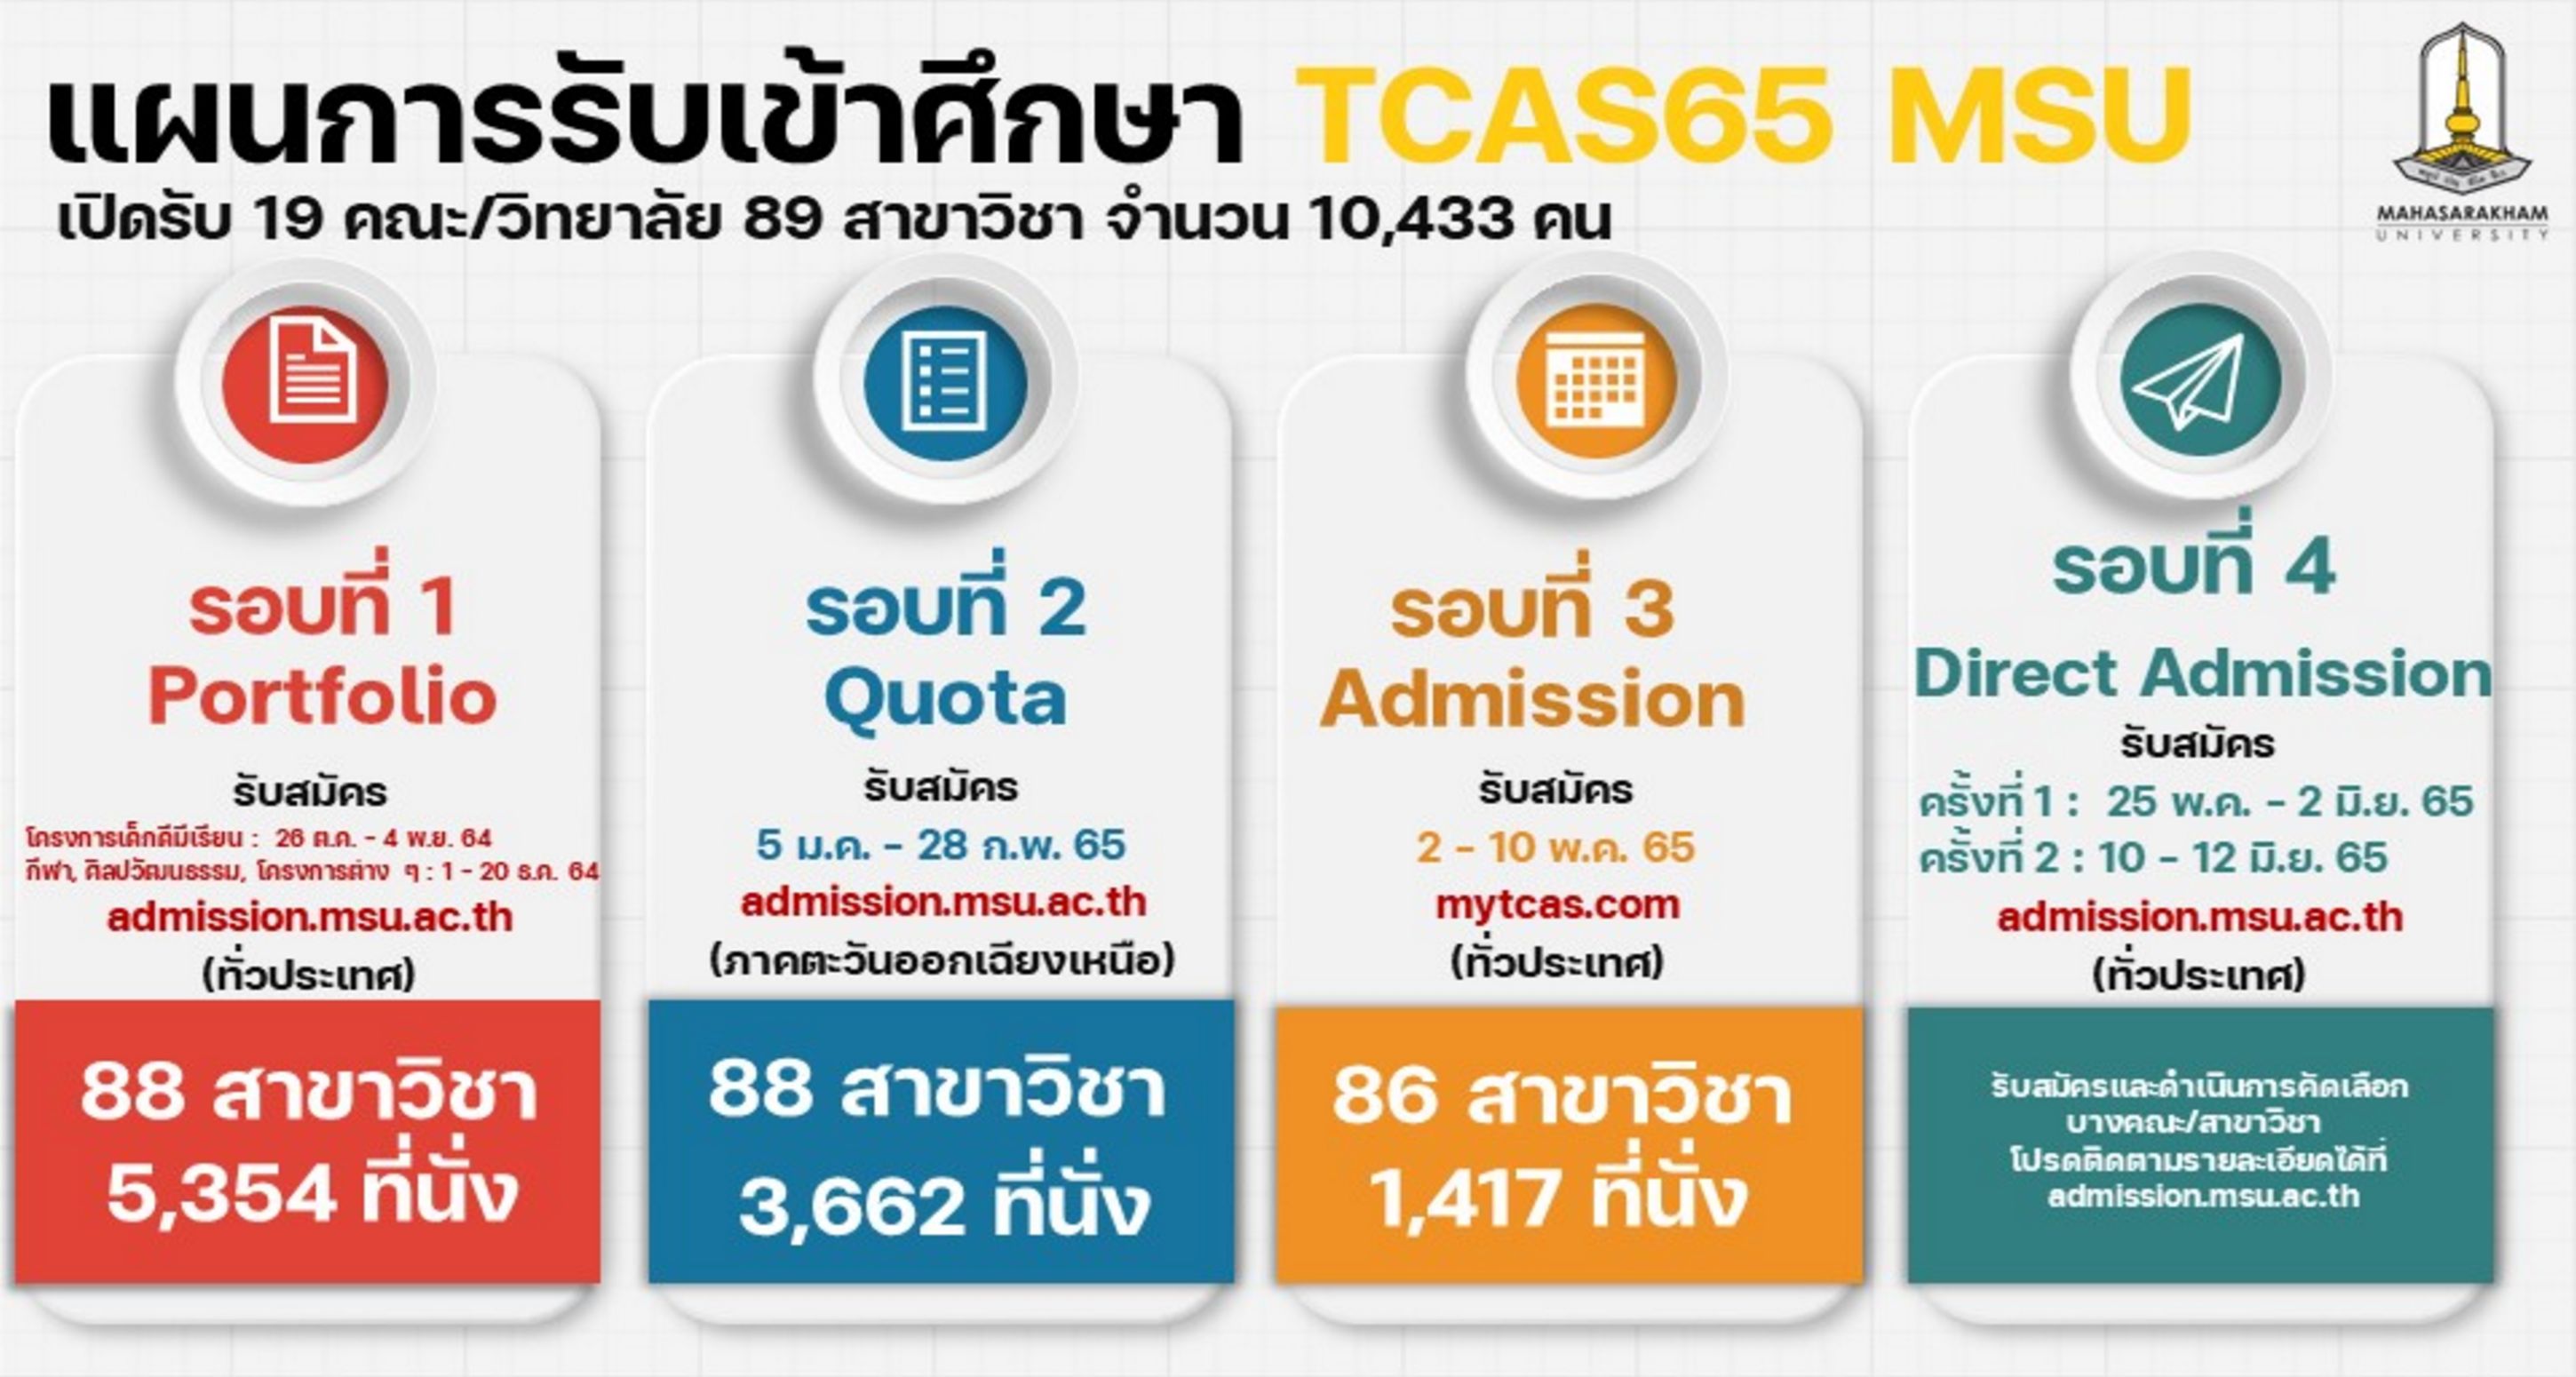 แผนการรับ TCAS'65 มหาวิทยาลัยมหาสารคาม